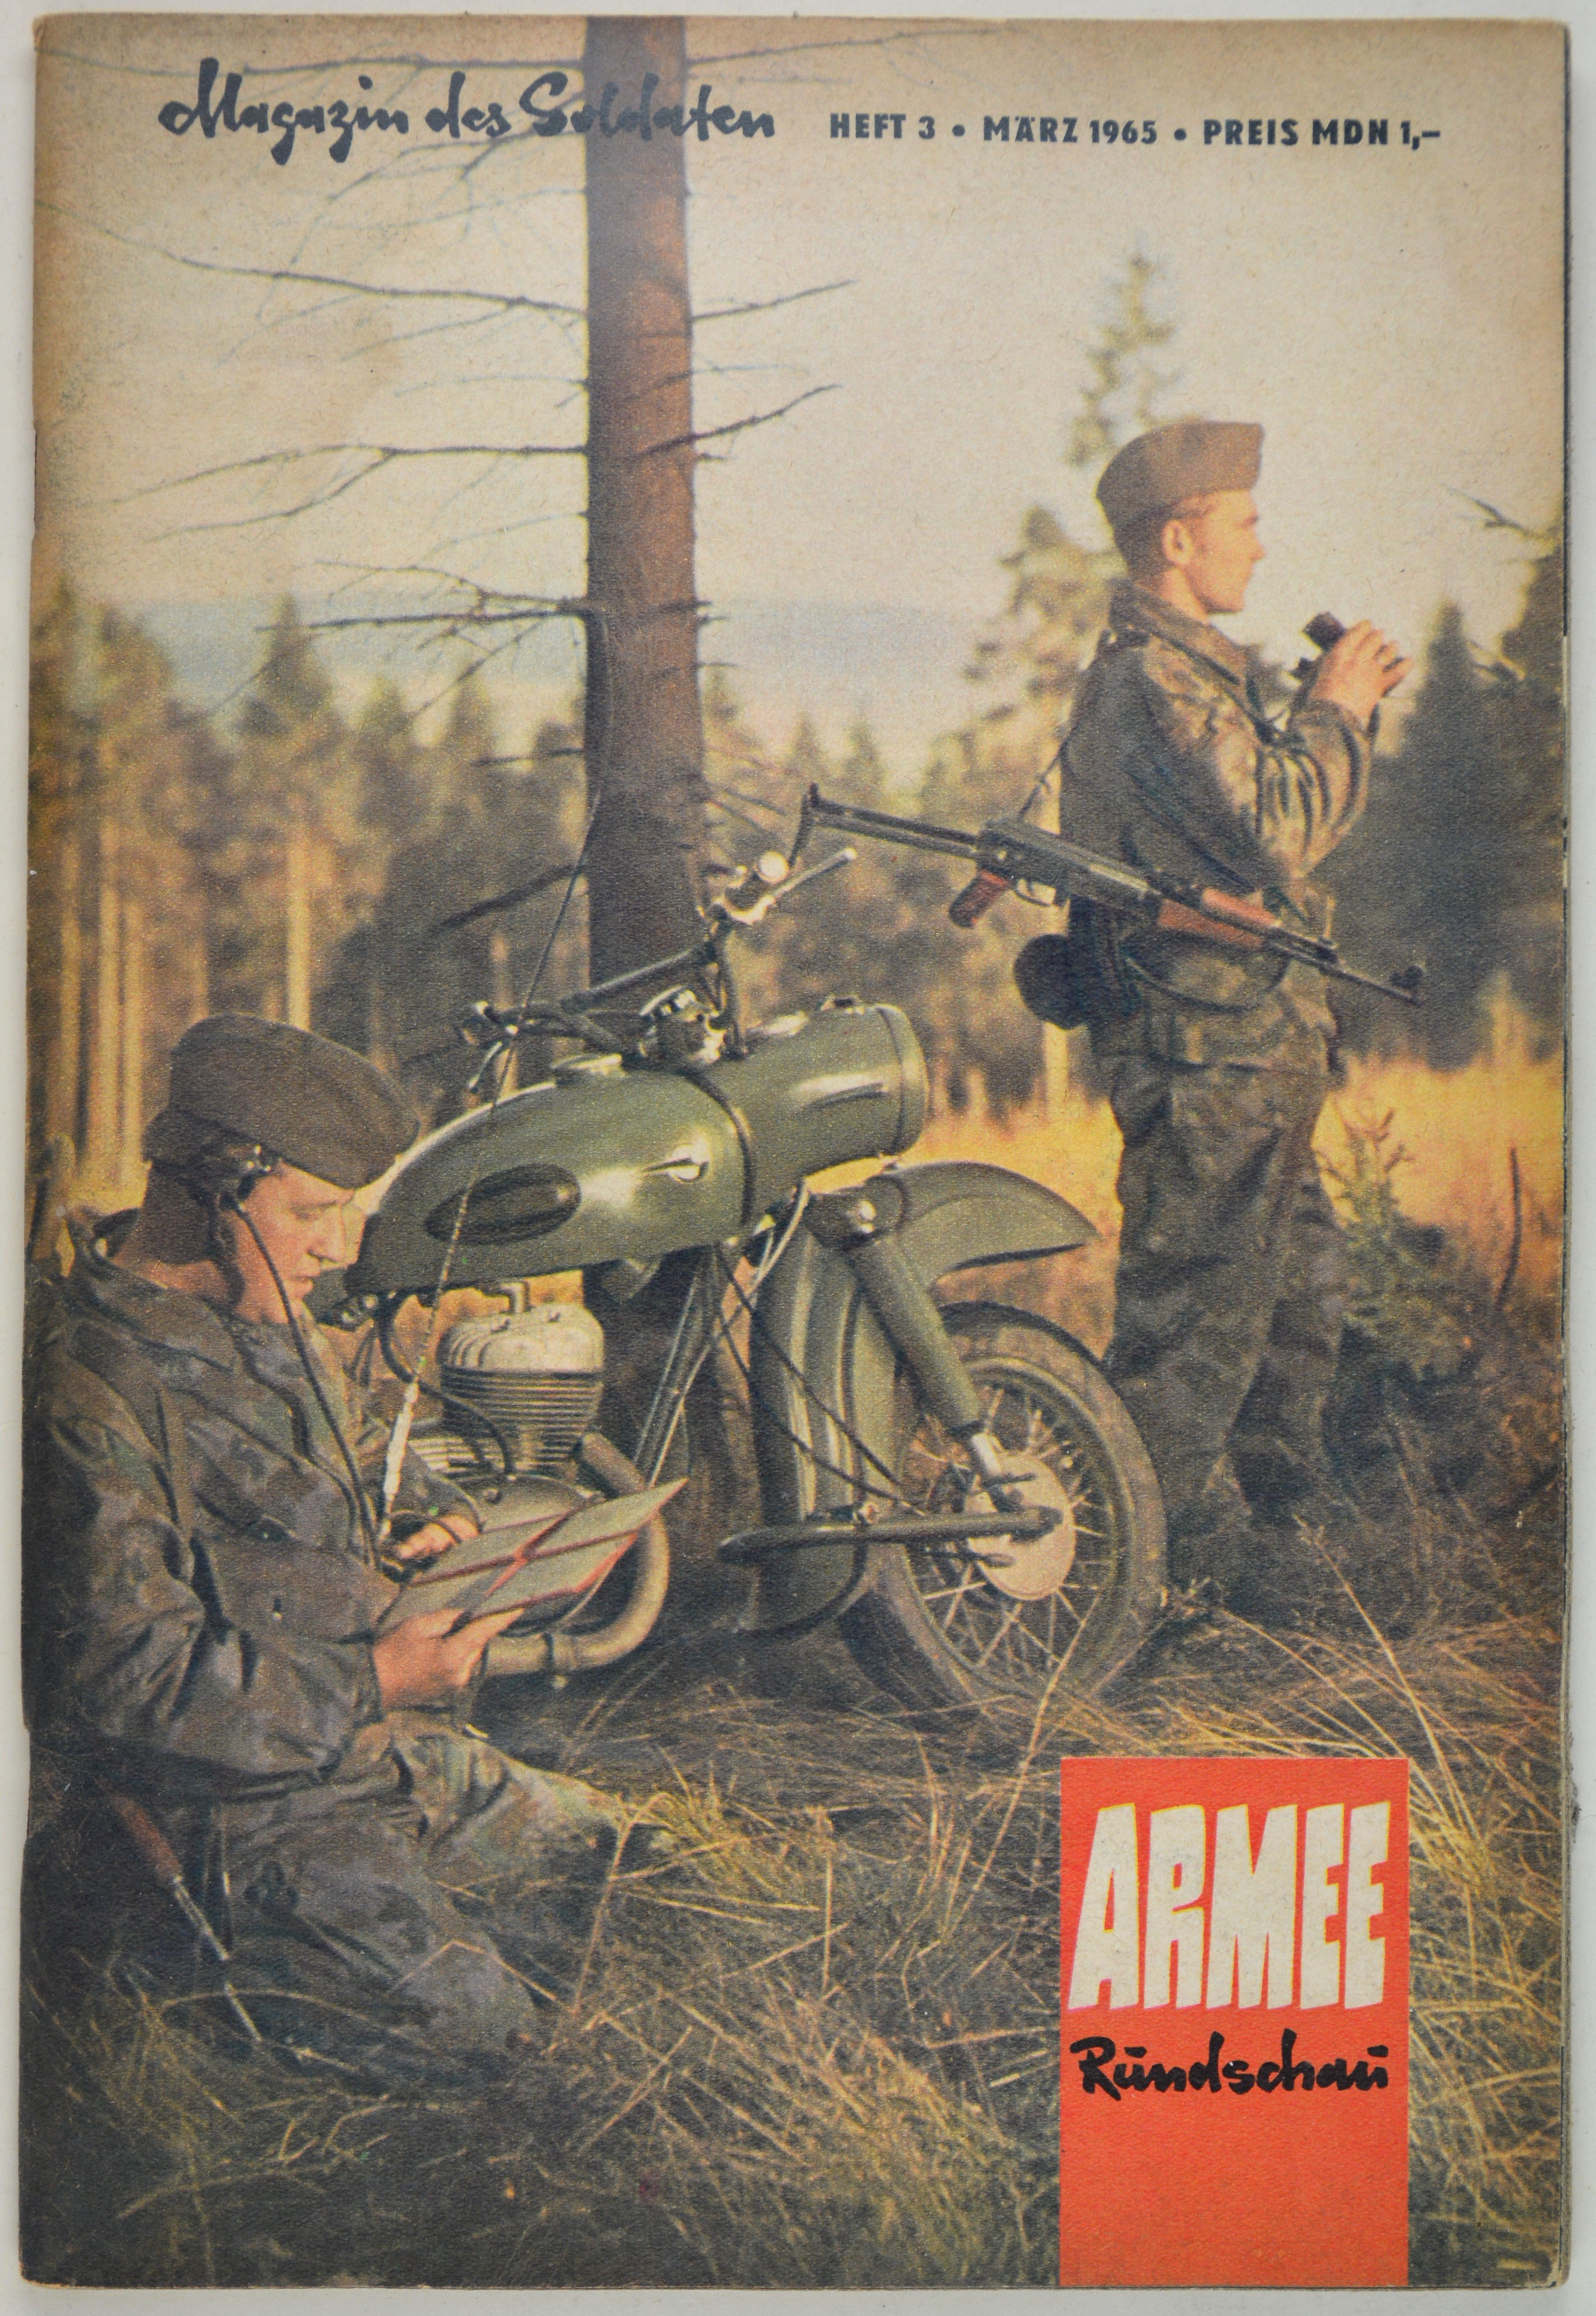 Armeerundschau - Magazin des Soldaten (1965), Heft 3 (DDR Geschichtsmuseum im Dokumentationszentrum Perleberg CC BY-SA)